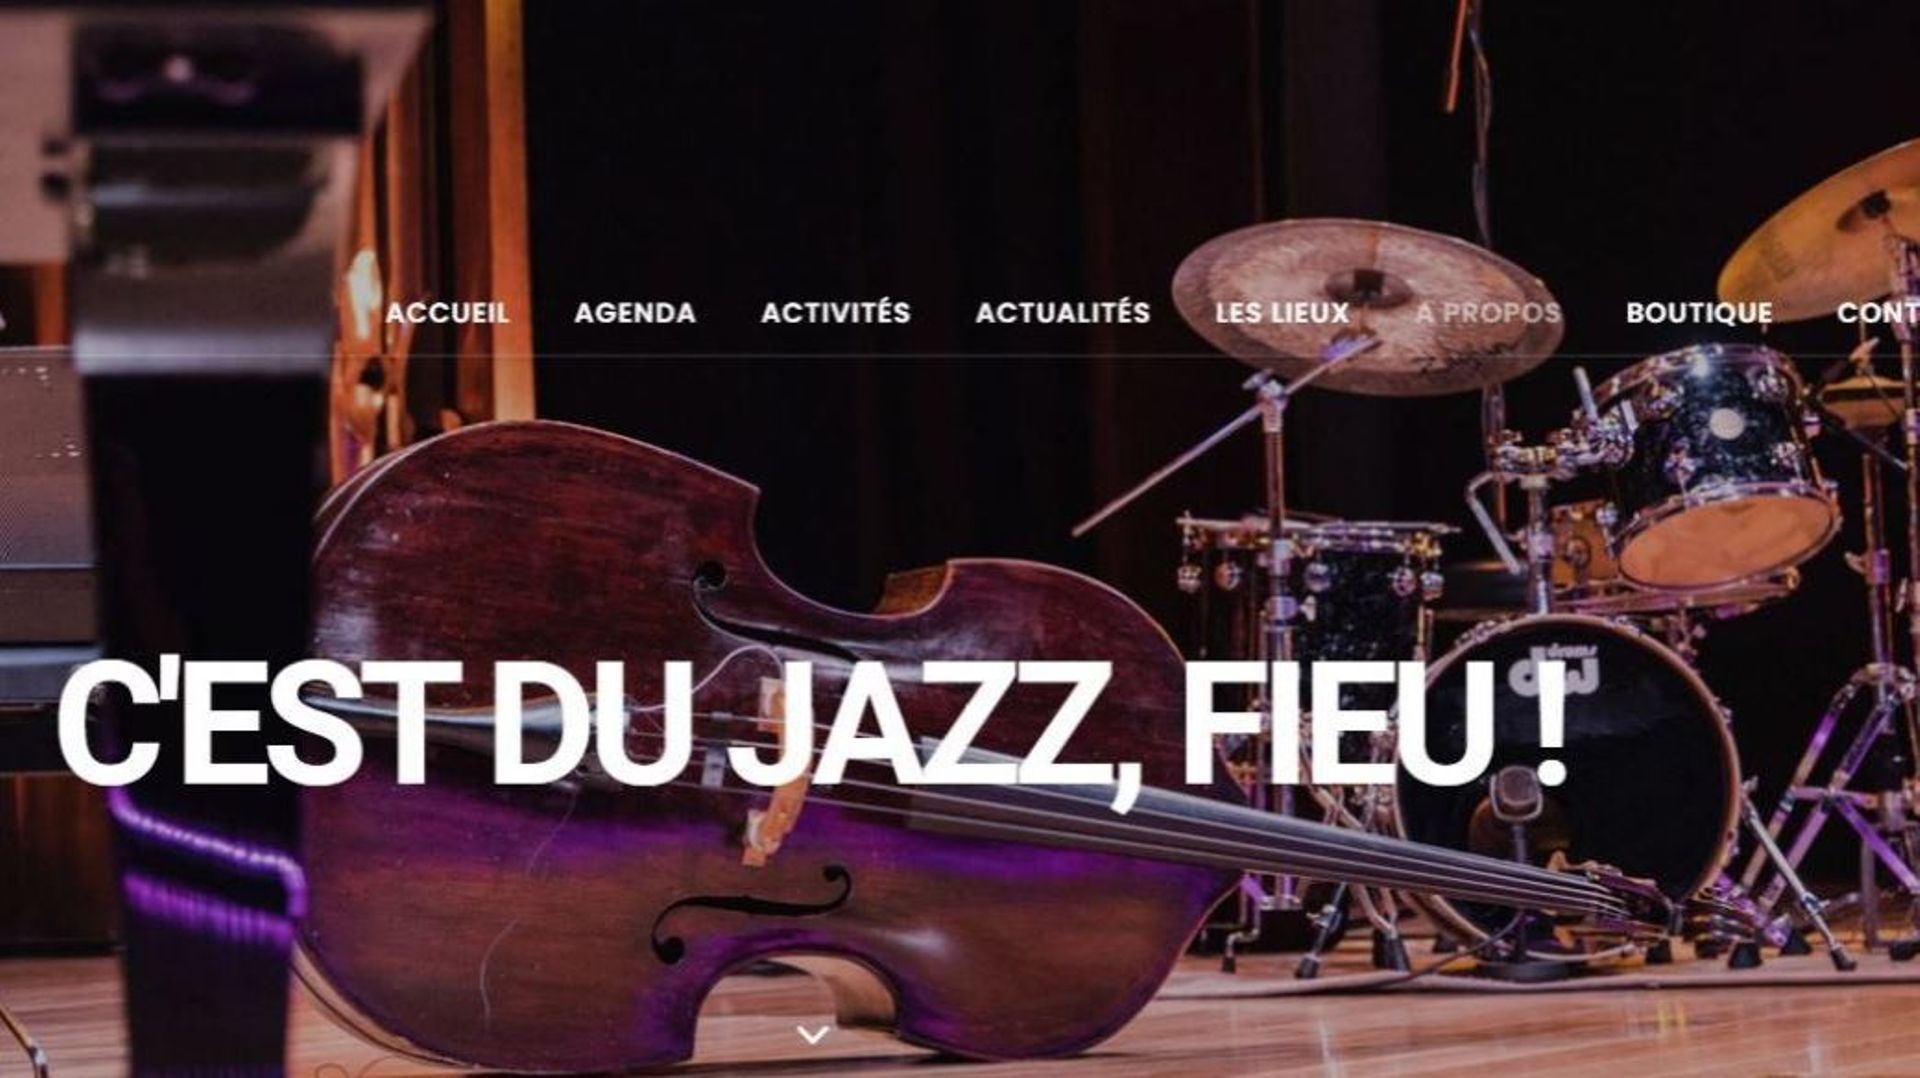 L'agenda de tous les concerts jazz en Belgique grâce à "Jazz In Belgium"